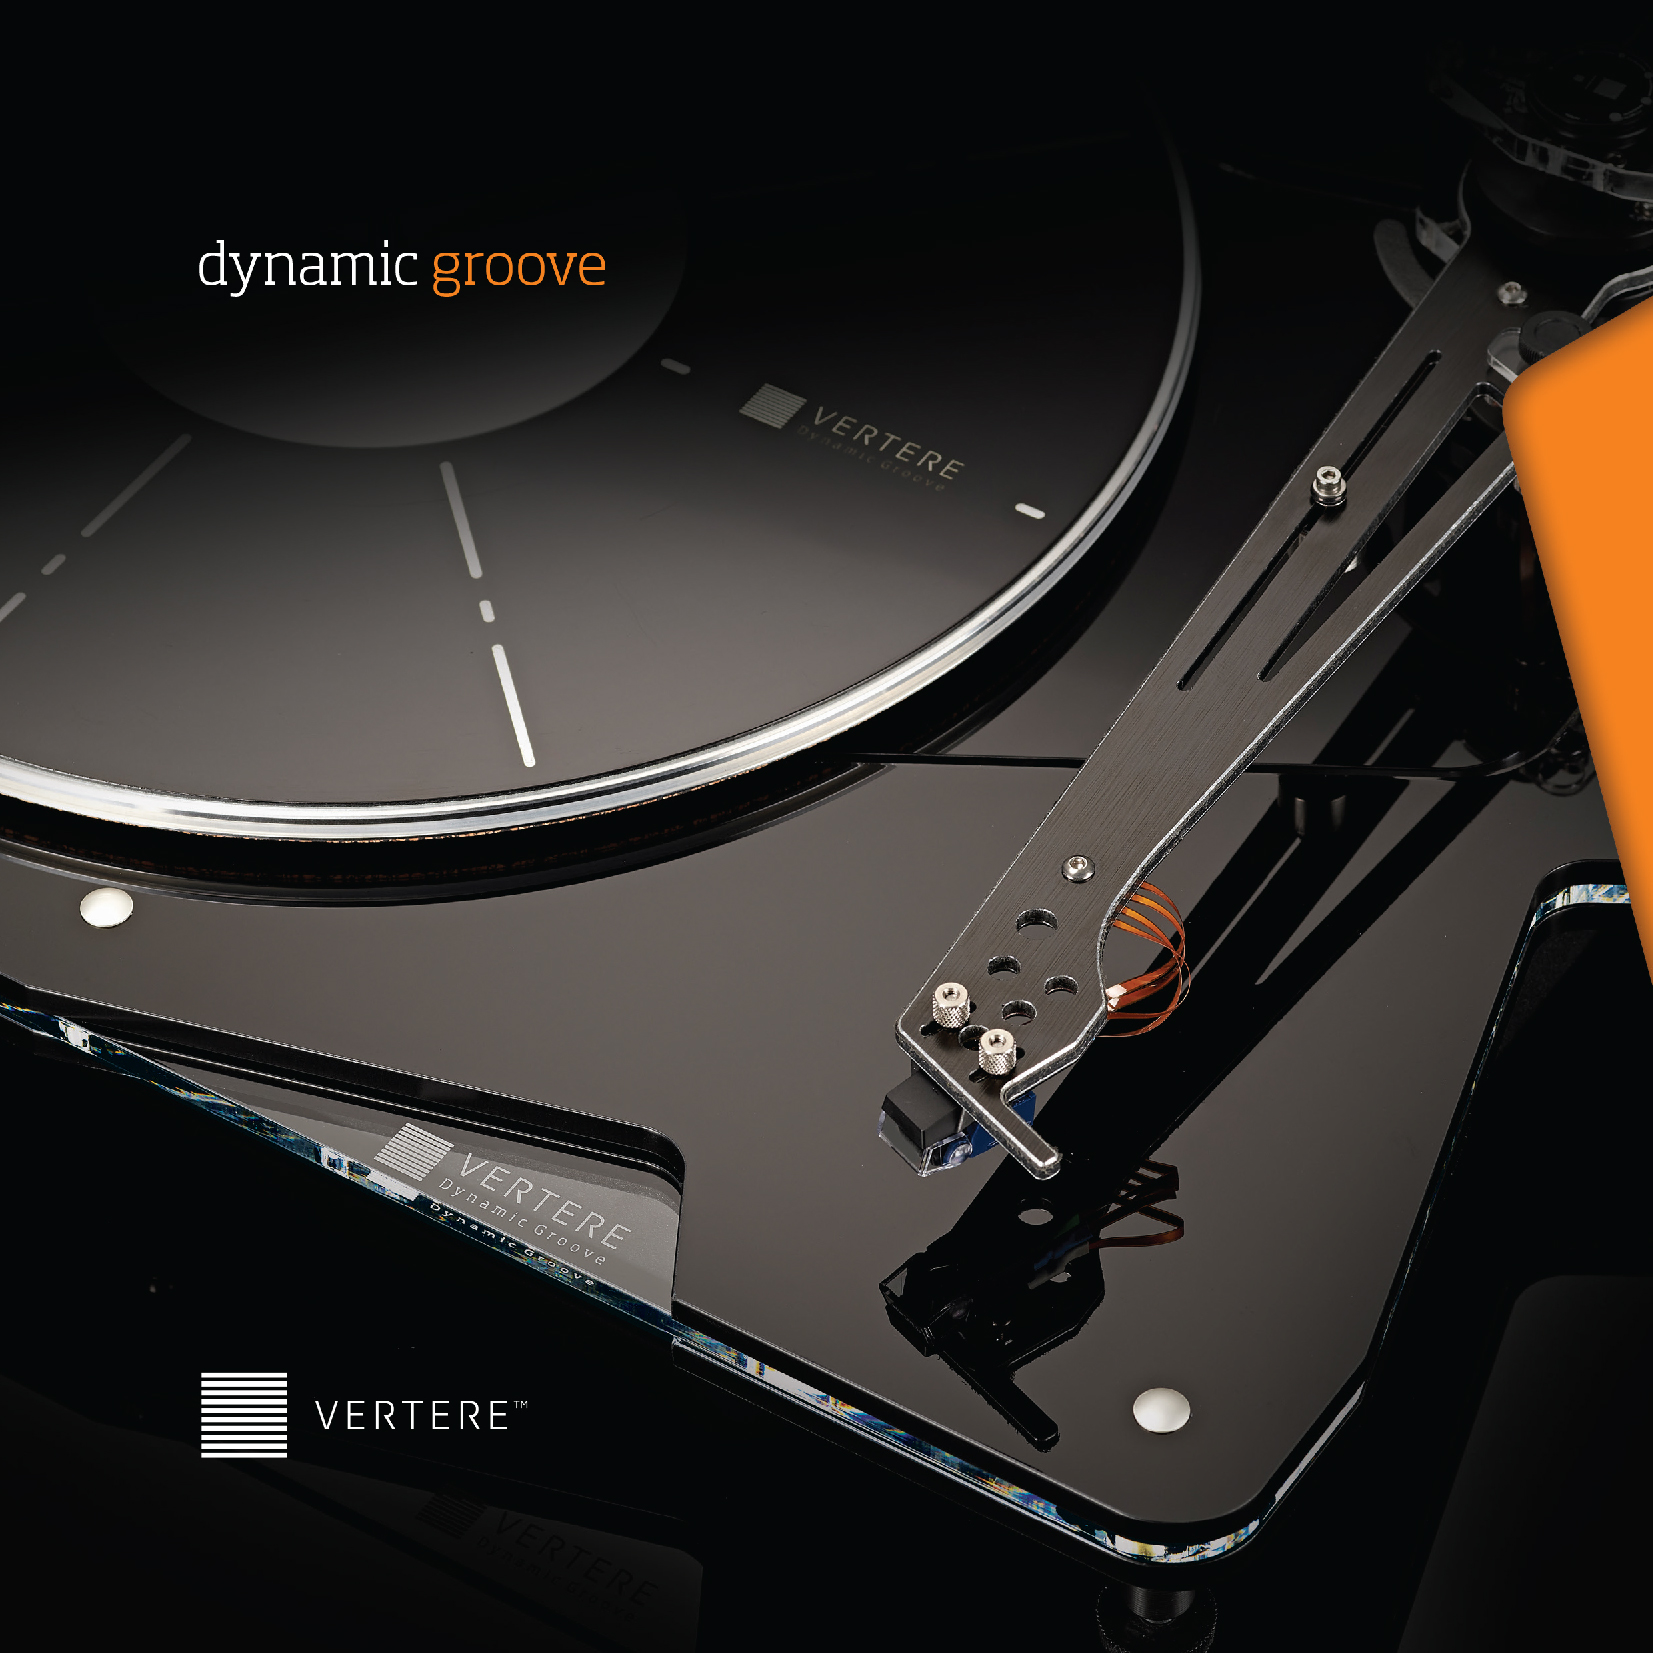 Vertere DG-1 Dynamic Groove Brochure-1-01